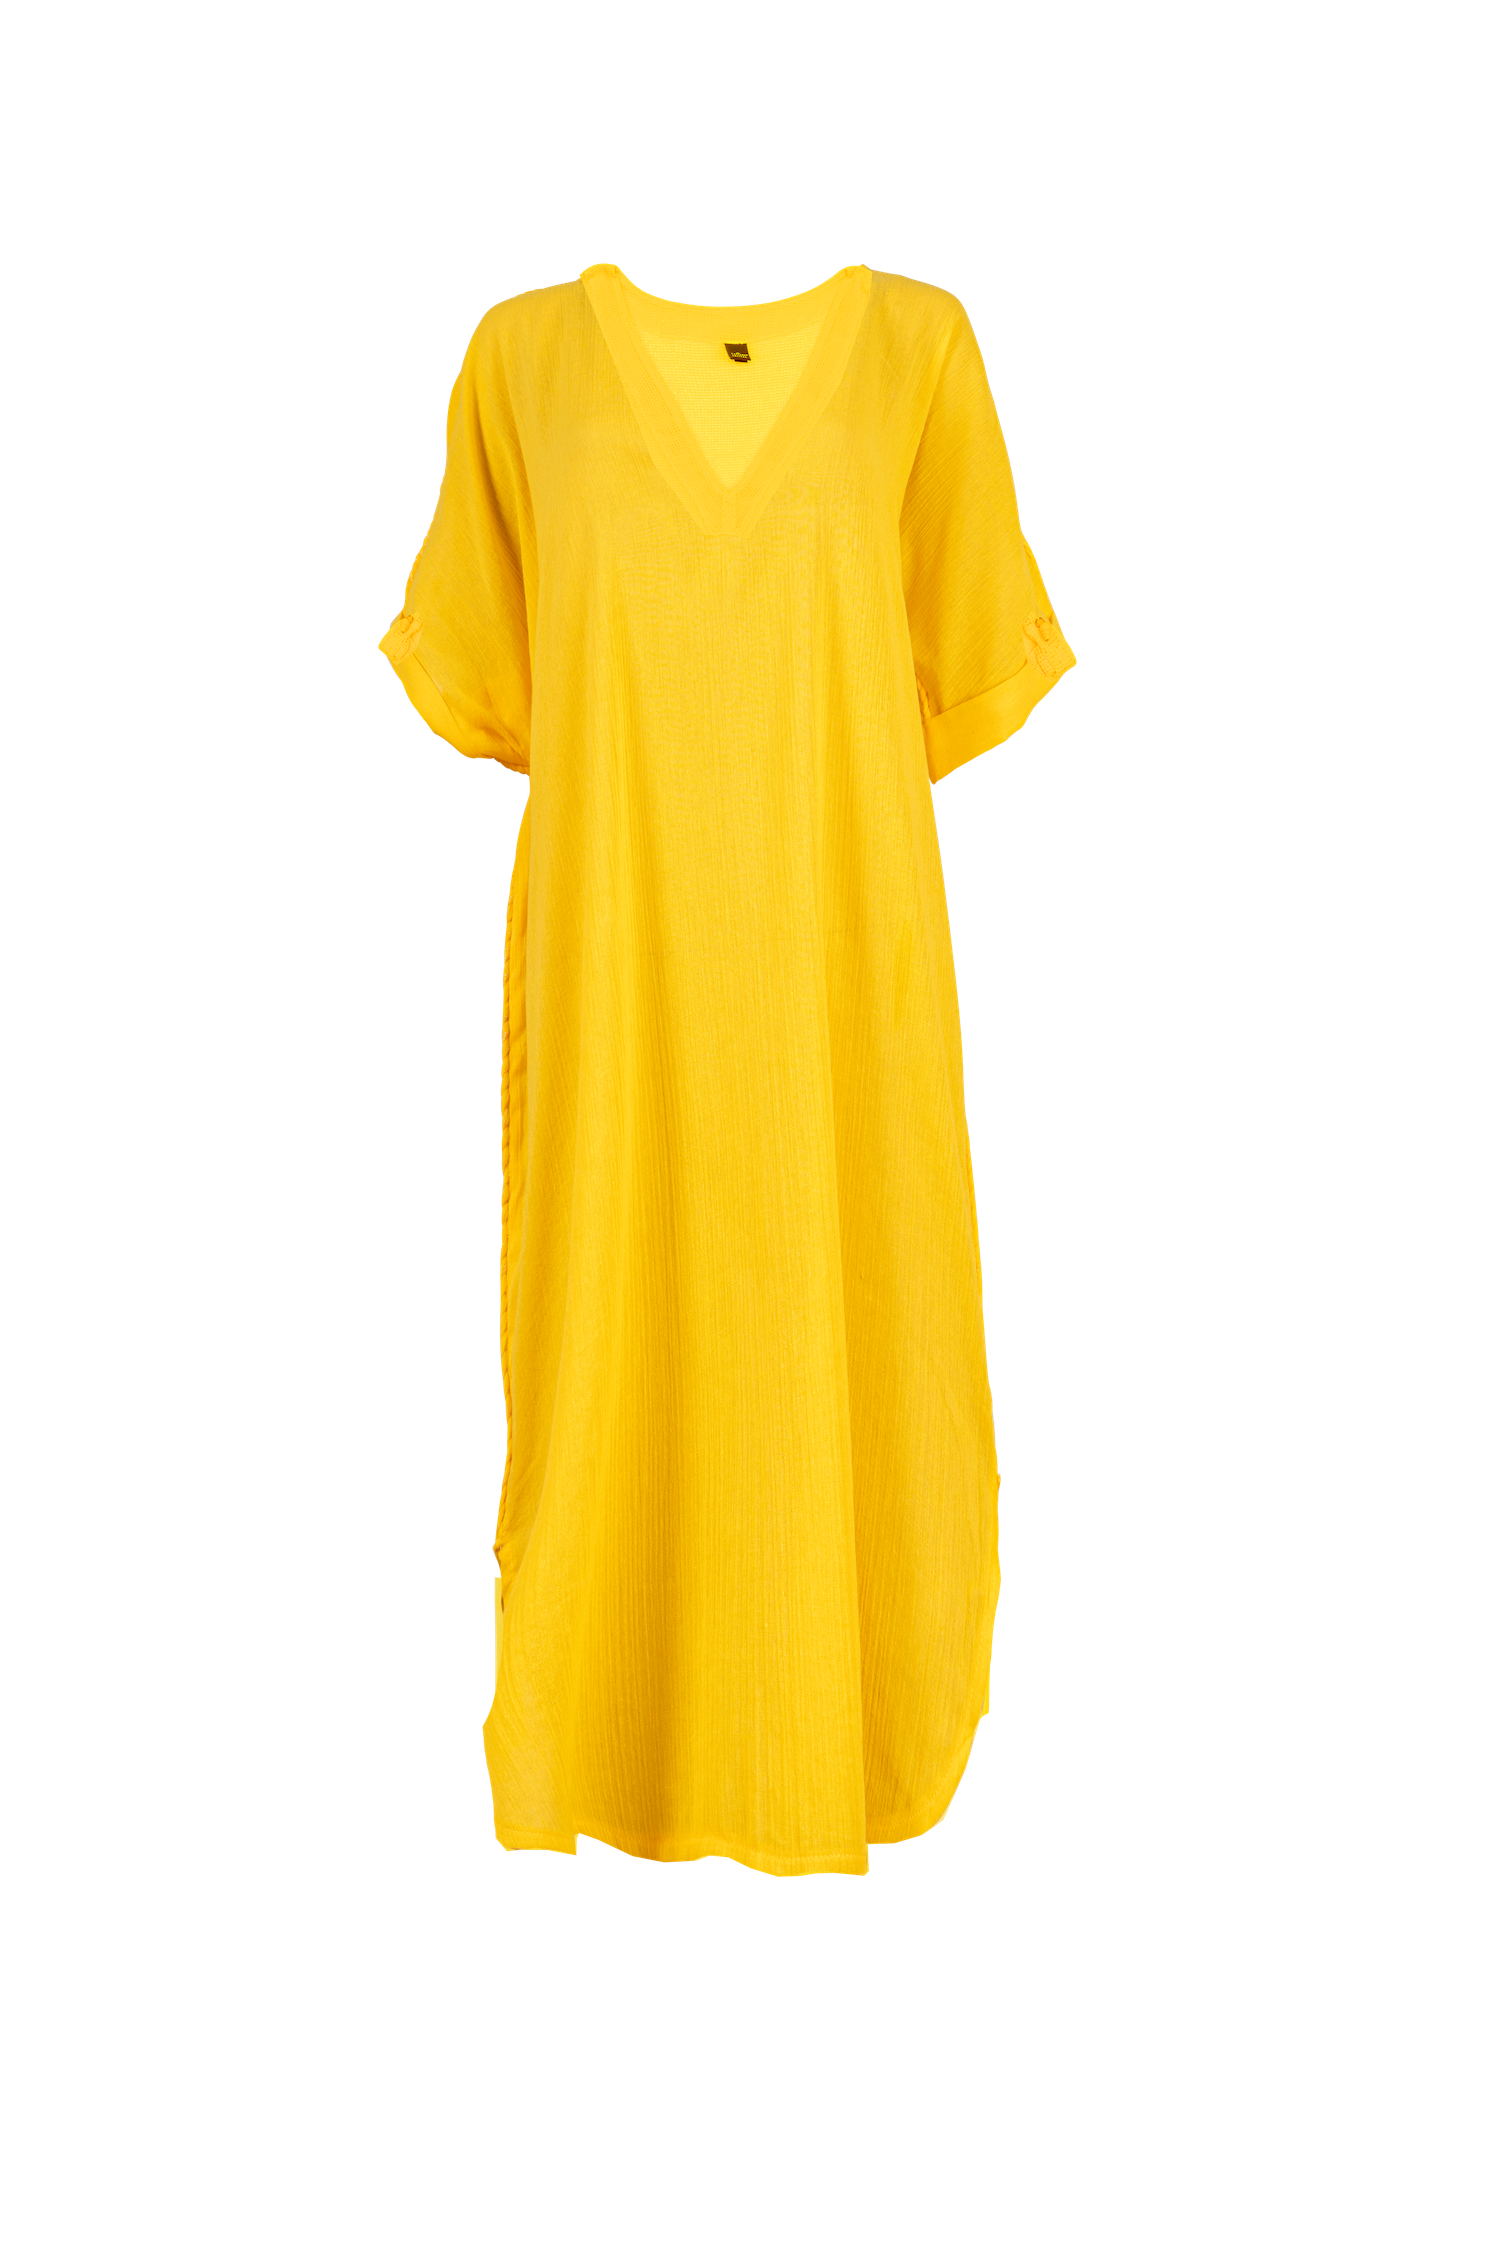 TARSILA - Robe de plage jaune marque française tatiane de freitas